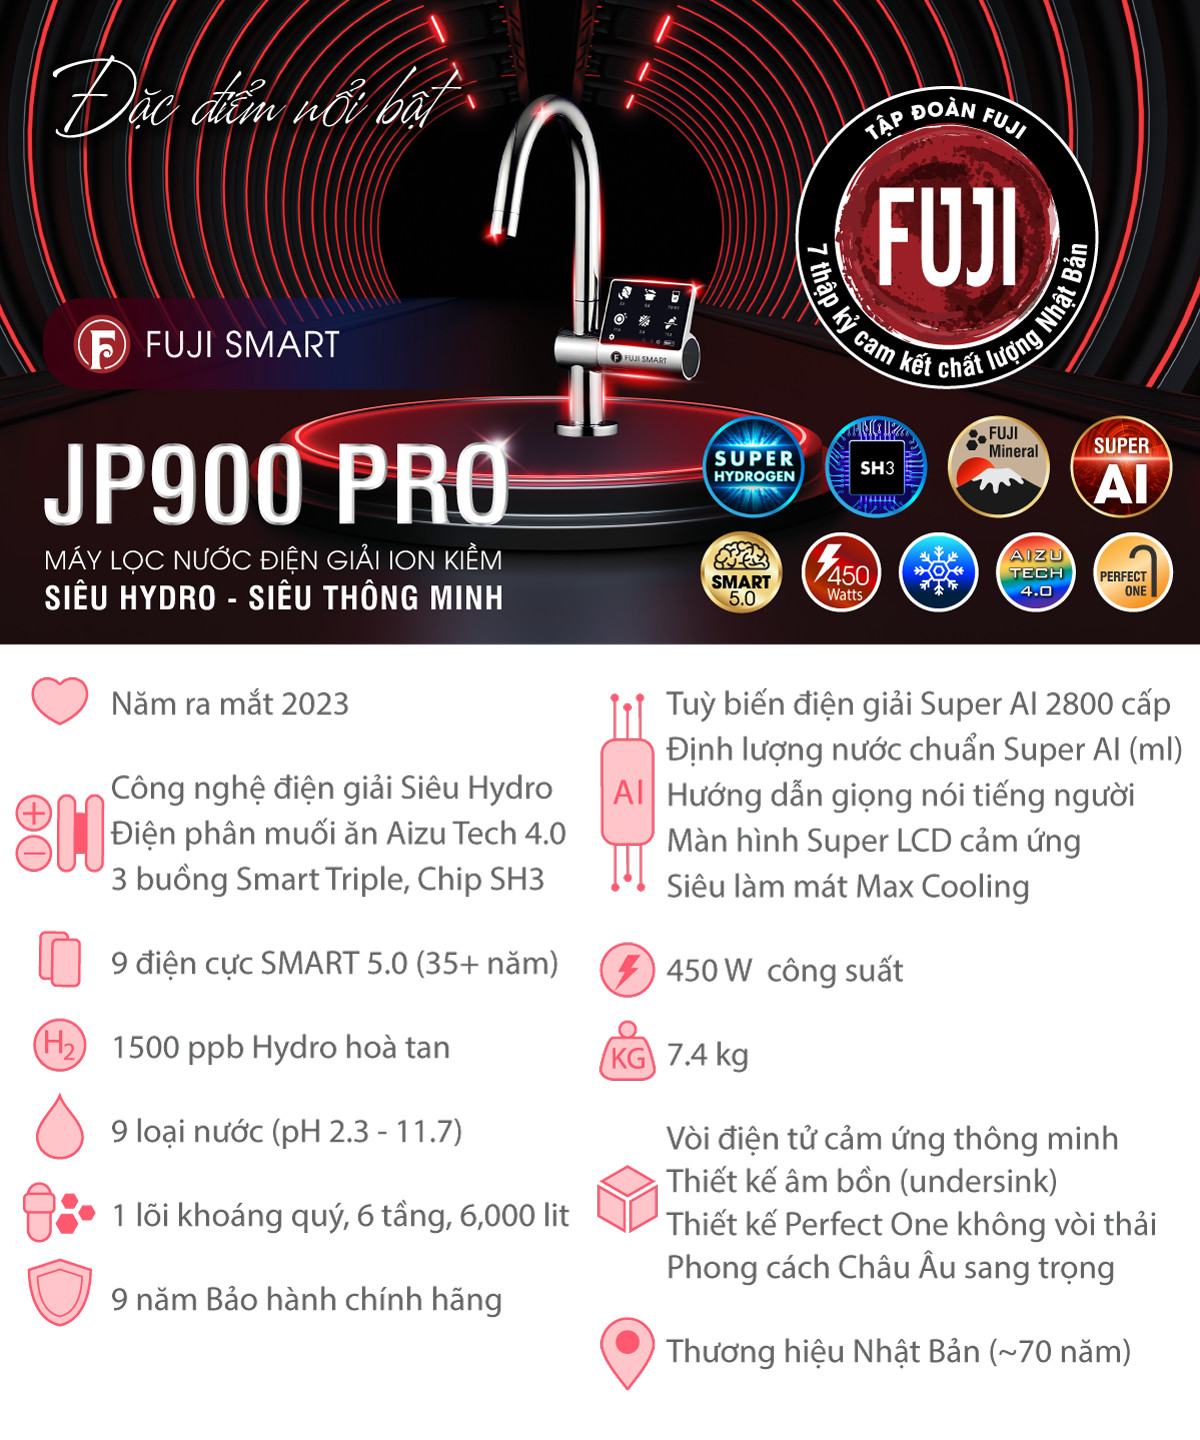 Tính năng nổi bật máy lọc nước ion kiềm Fuji Smart JP900 Pro